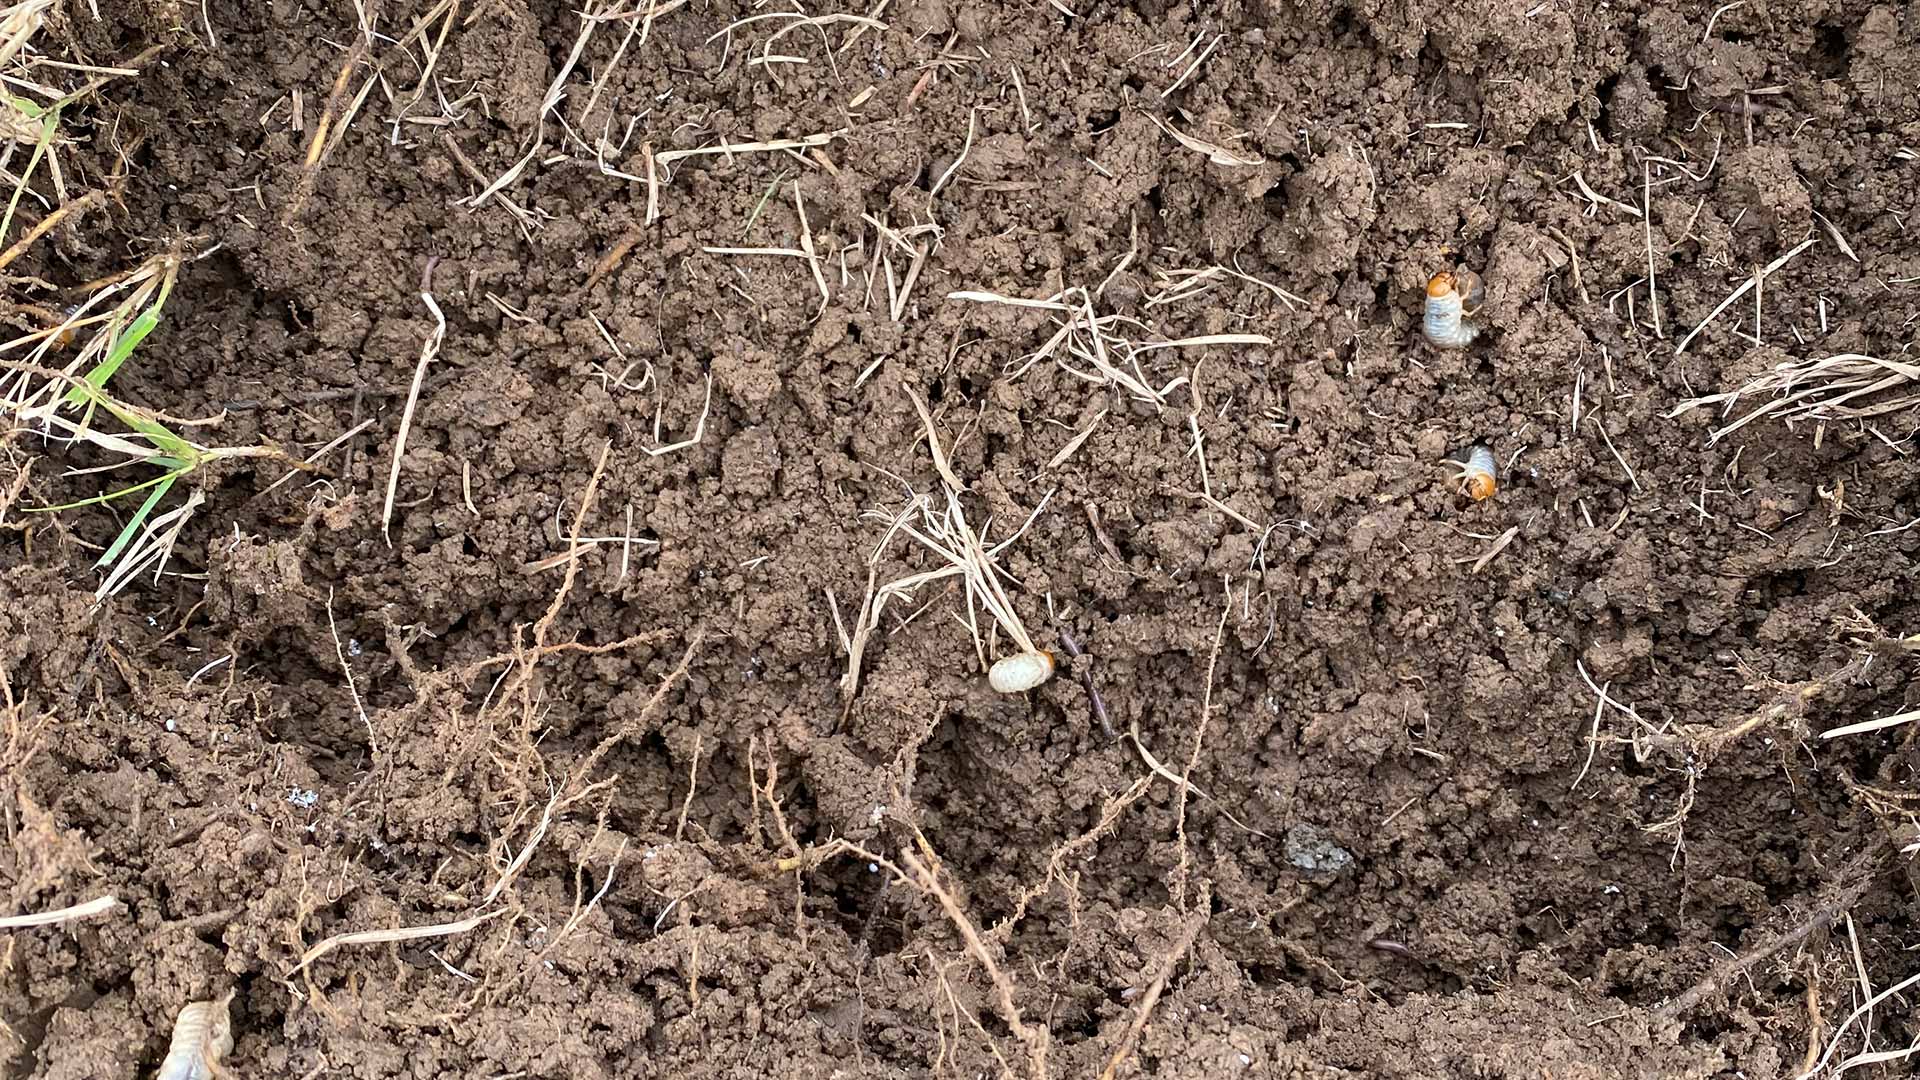 Grub worms found in lawn soil near North Little Rock, AR.